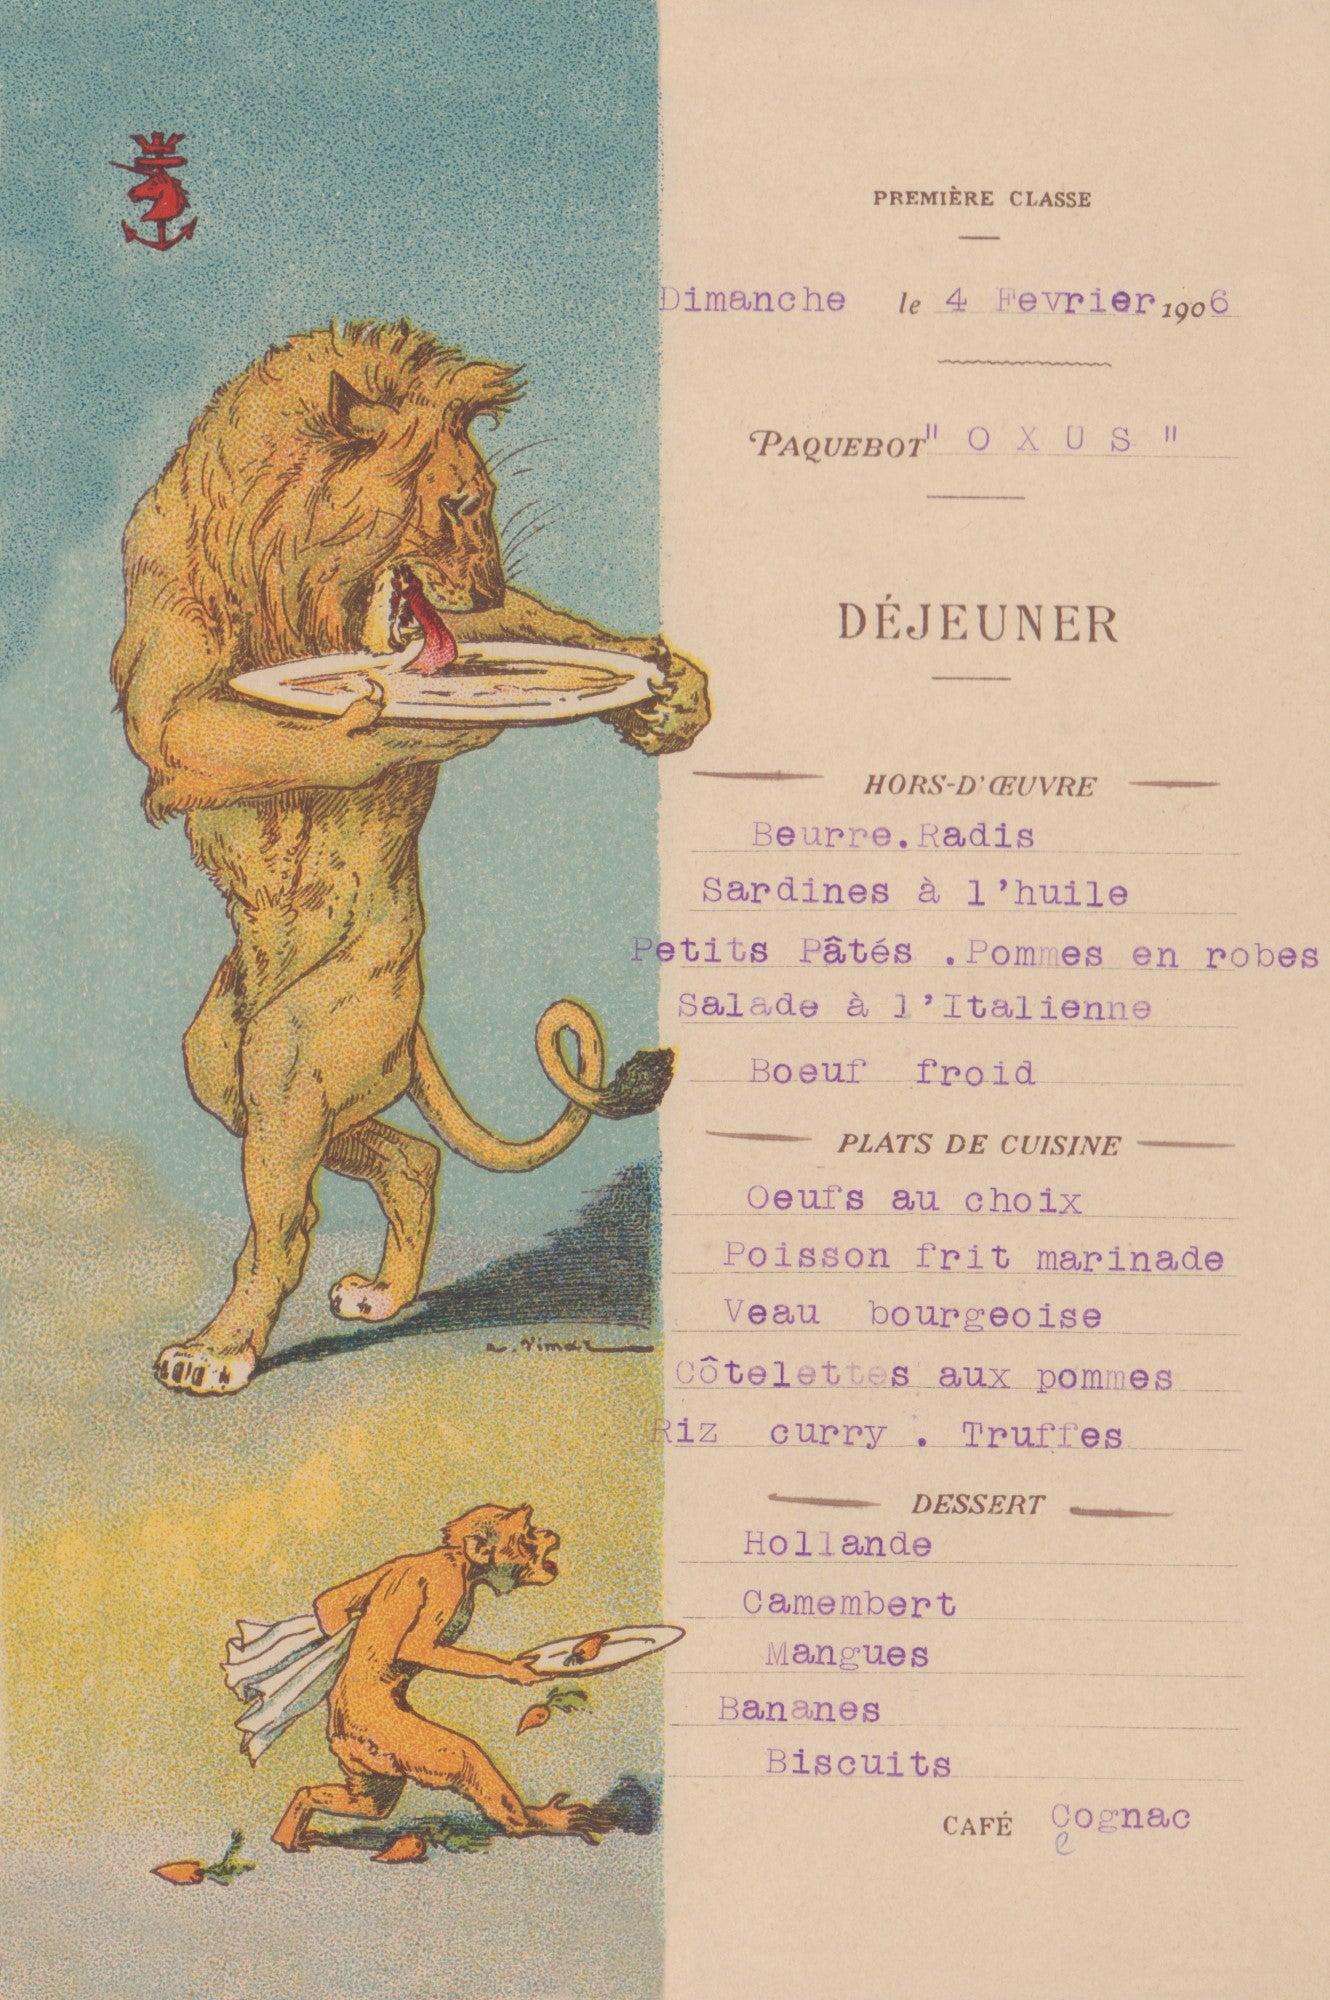 Le Paquebot Oxus 1906 (Lion) Menu Art by Auguste Vimar